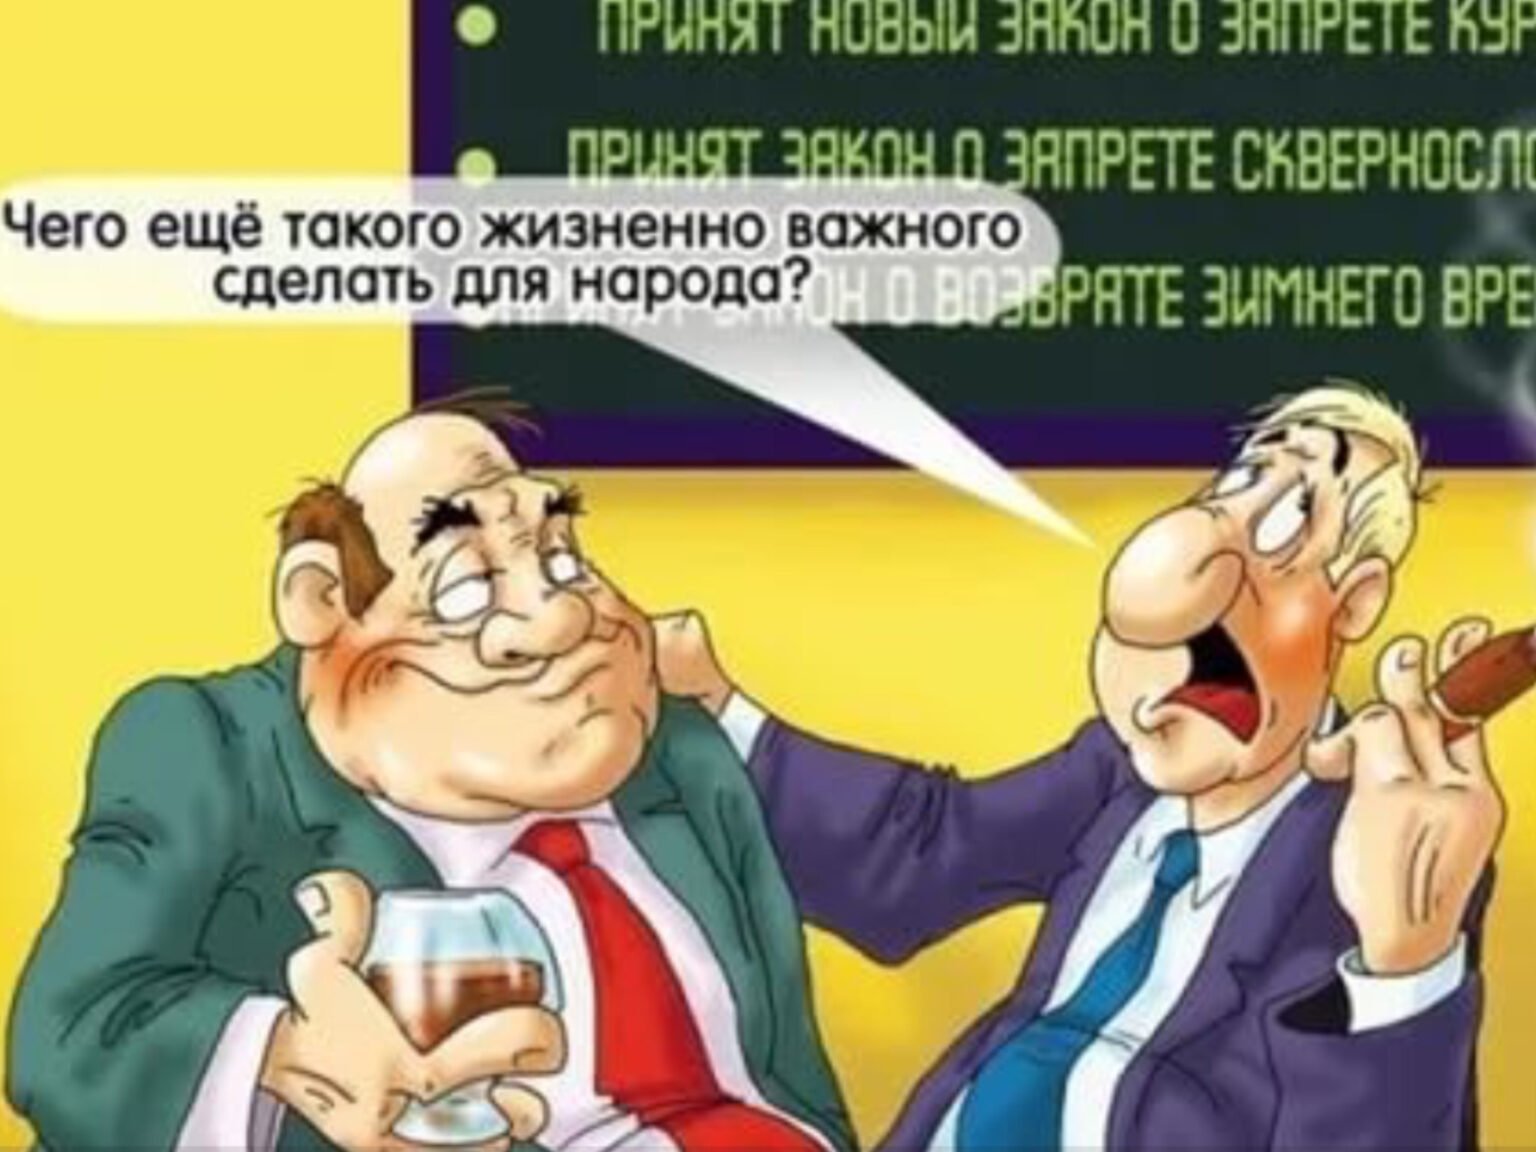 Правительство заботится о. Карикатура на чиновников и депутатов. Карикатуры на депутатов Госдумы. Карикатура. Дума карикатура.